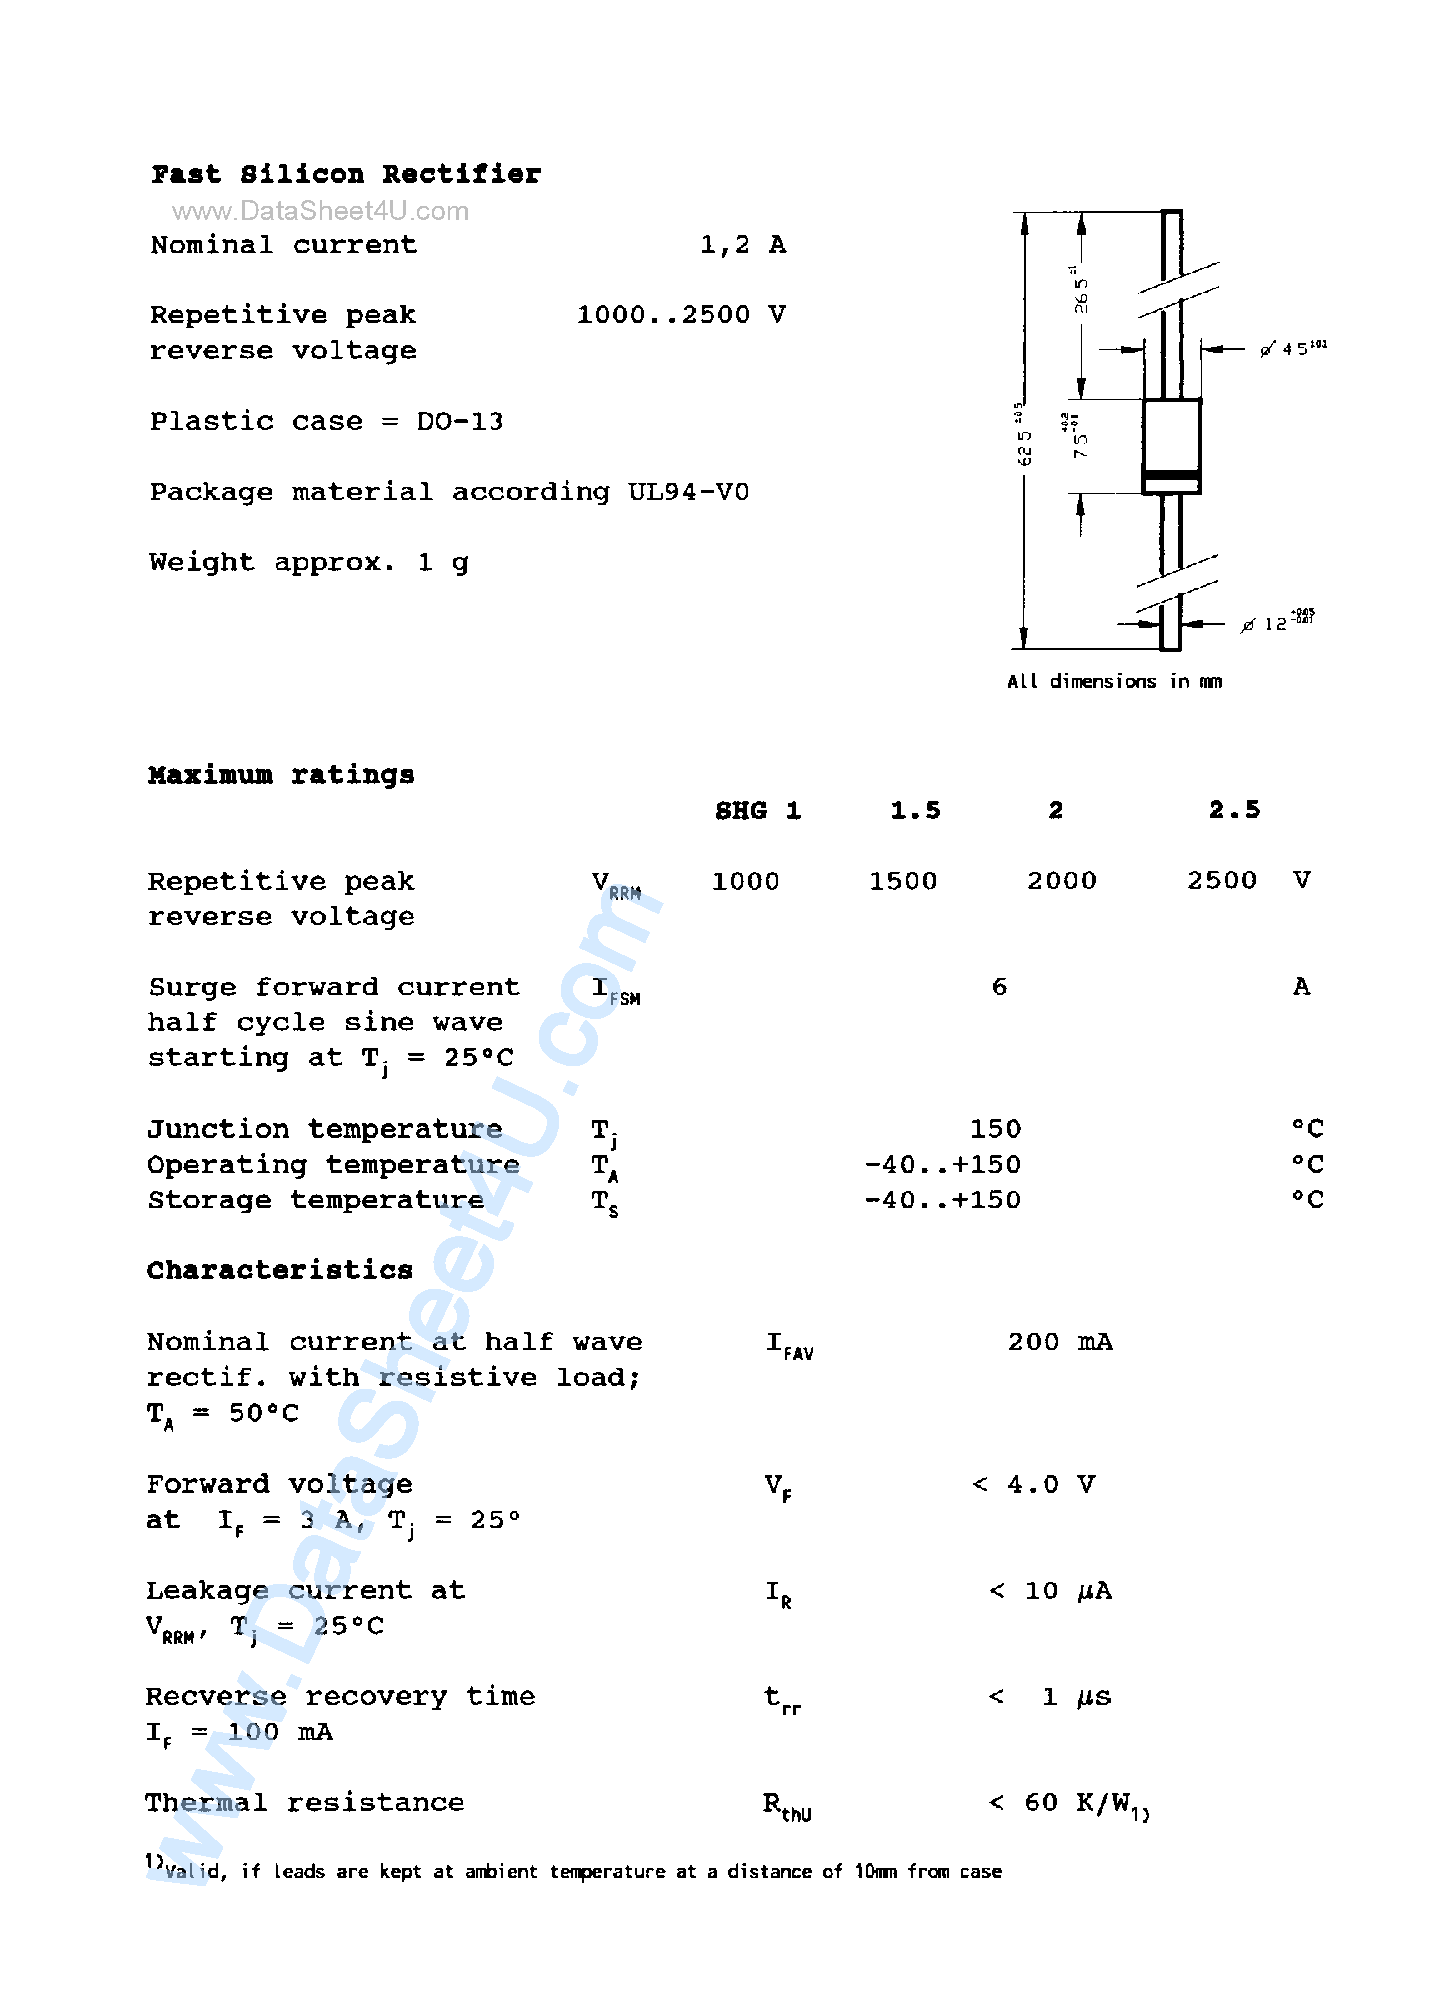 Datasheet SHG1 - (SHG1 - SHG2.5) Fast Silicon Rectifier page 1